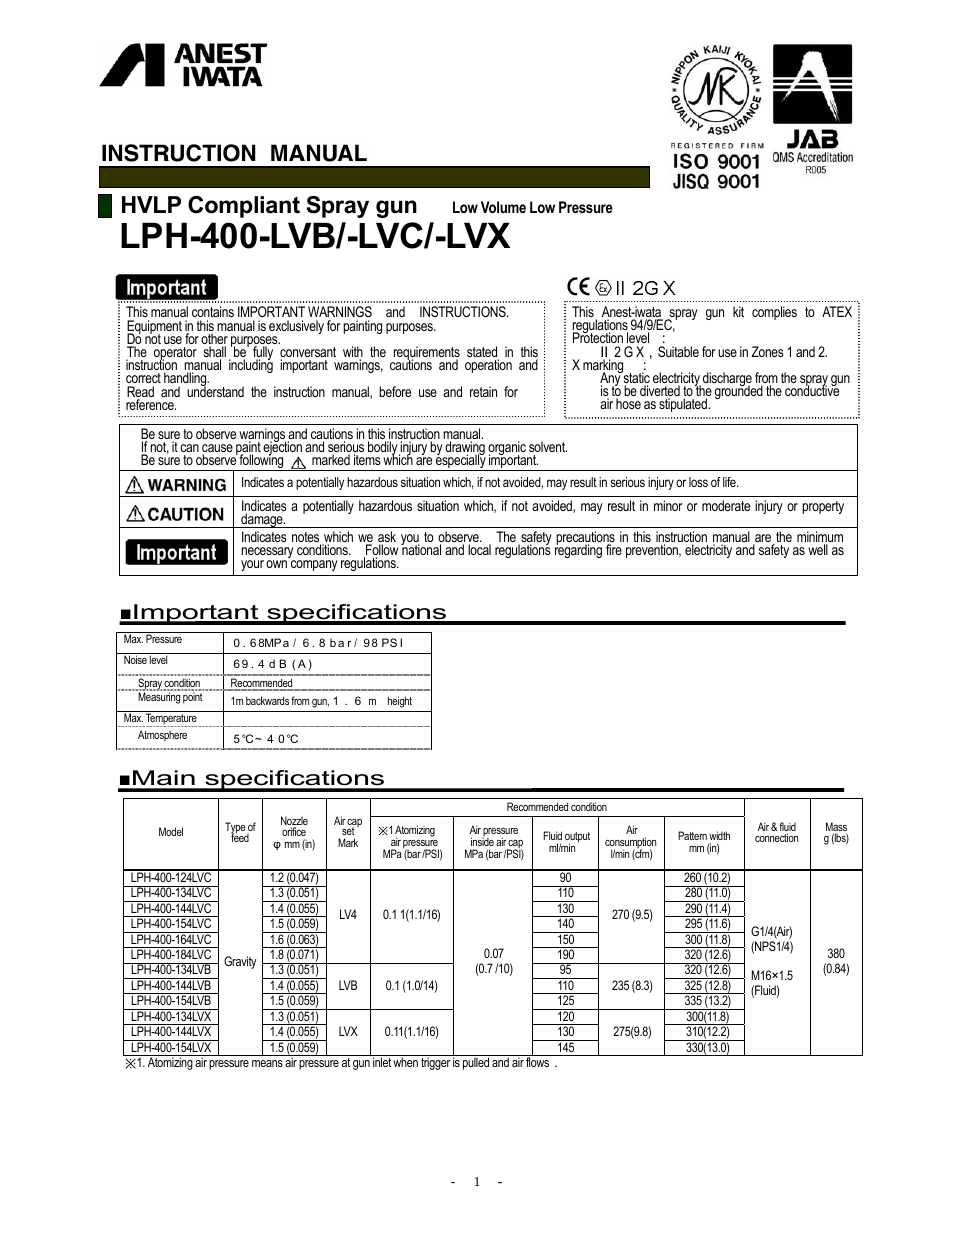 LPH400-LVX